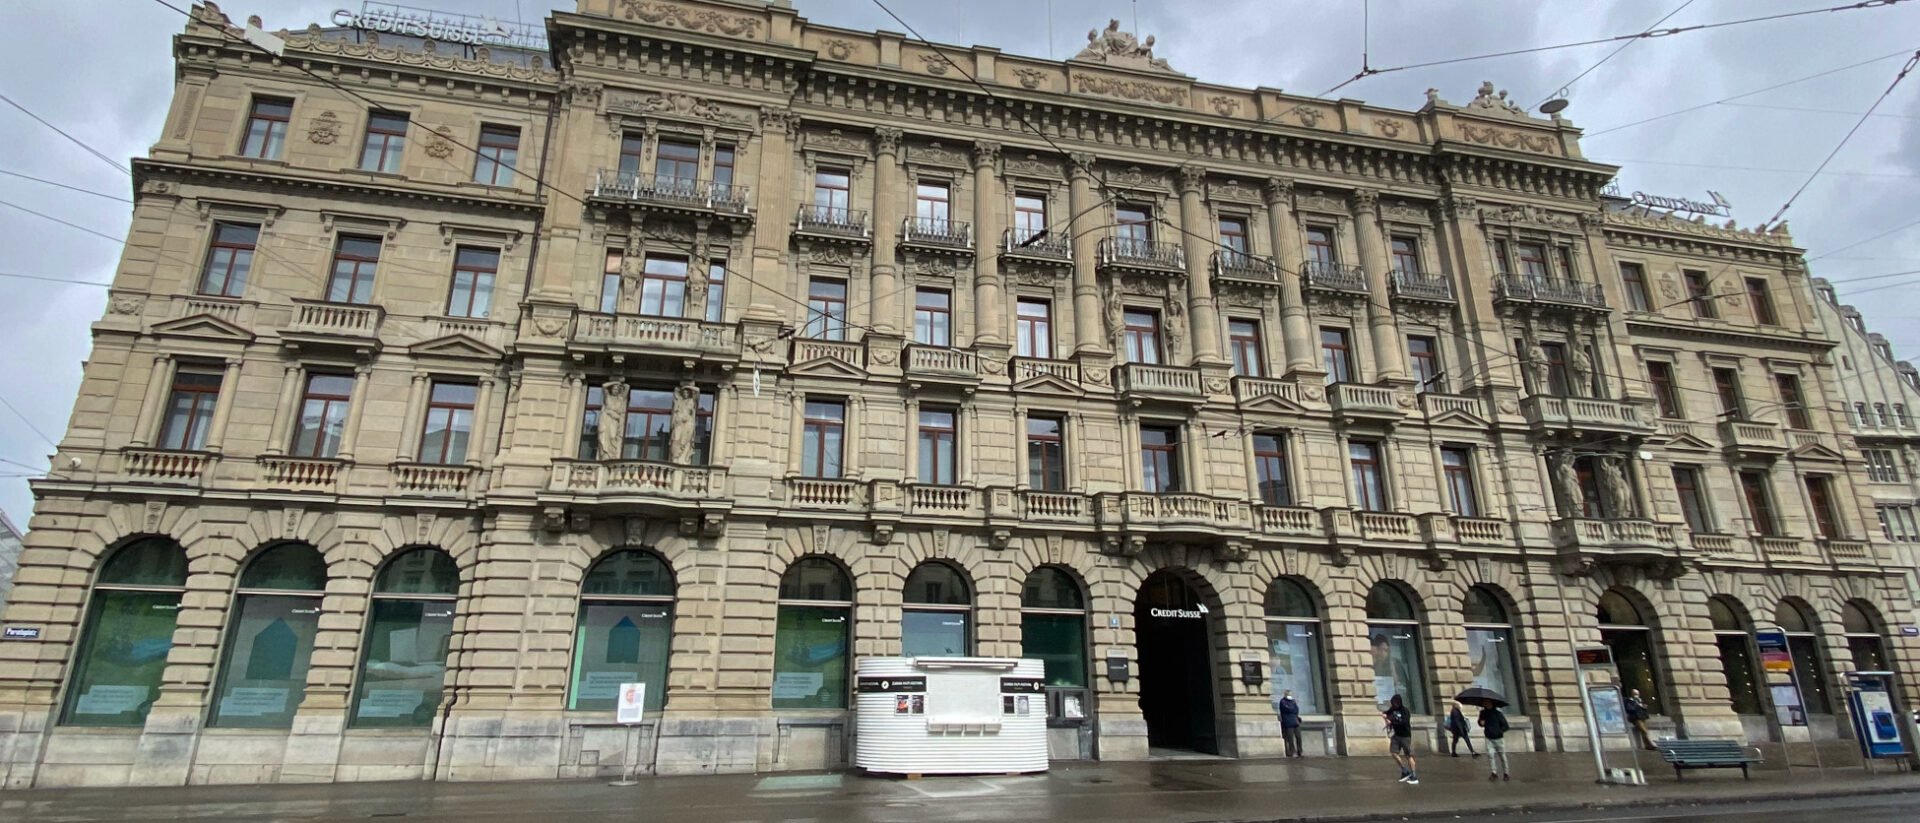 Die "Credit Suisse" am Zürcher Paradeplatz.